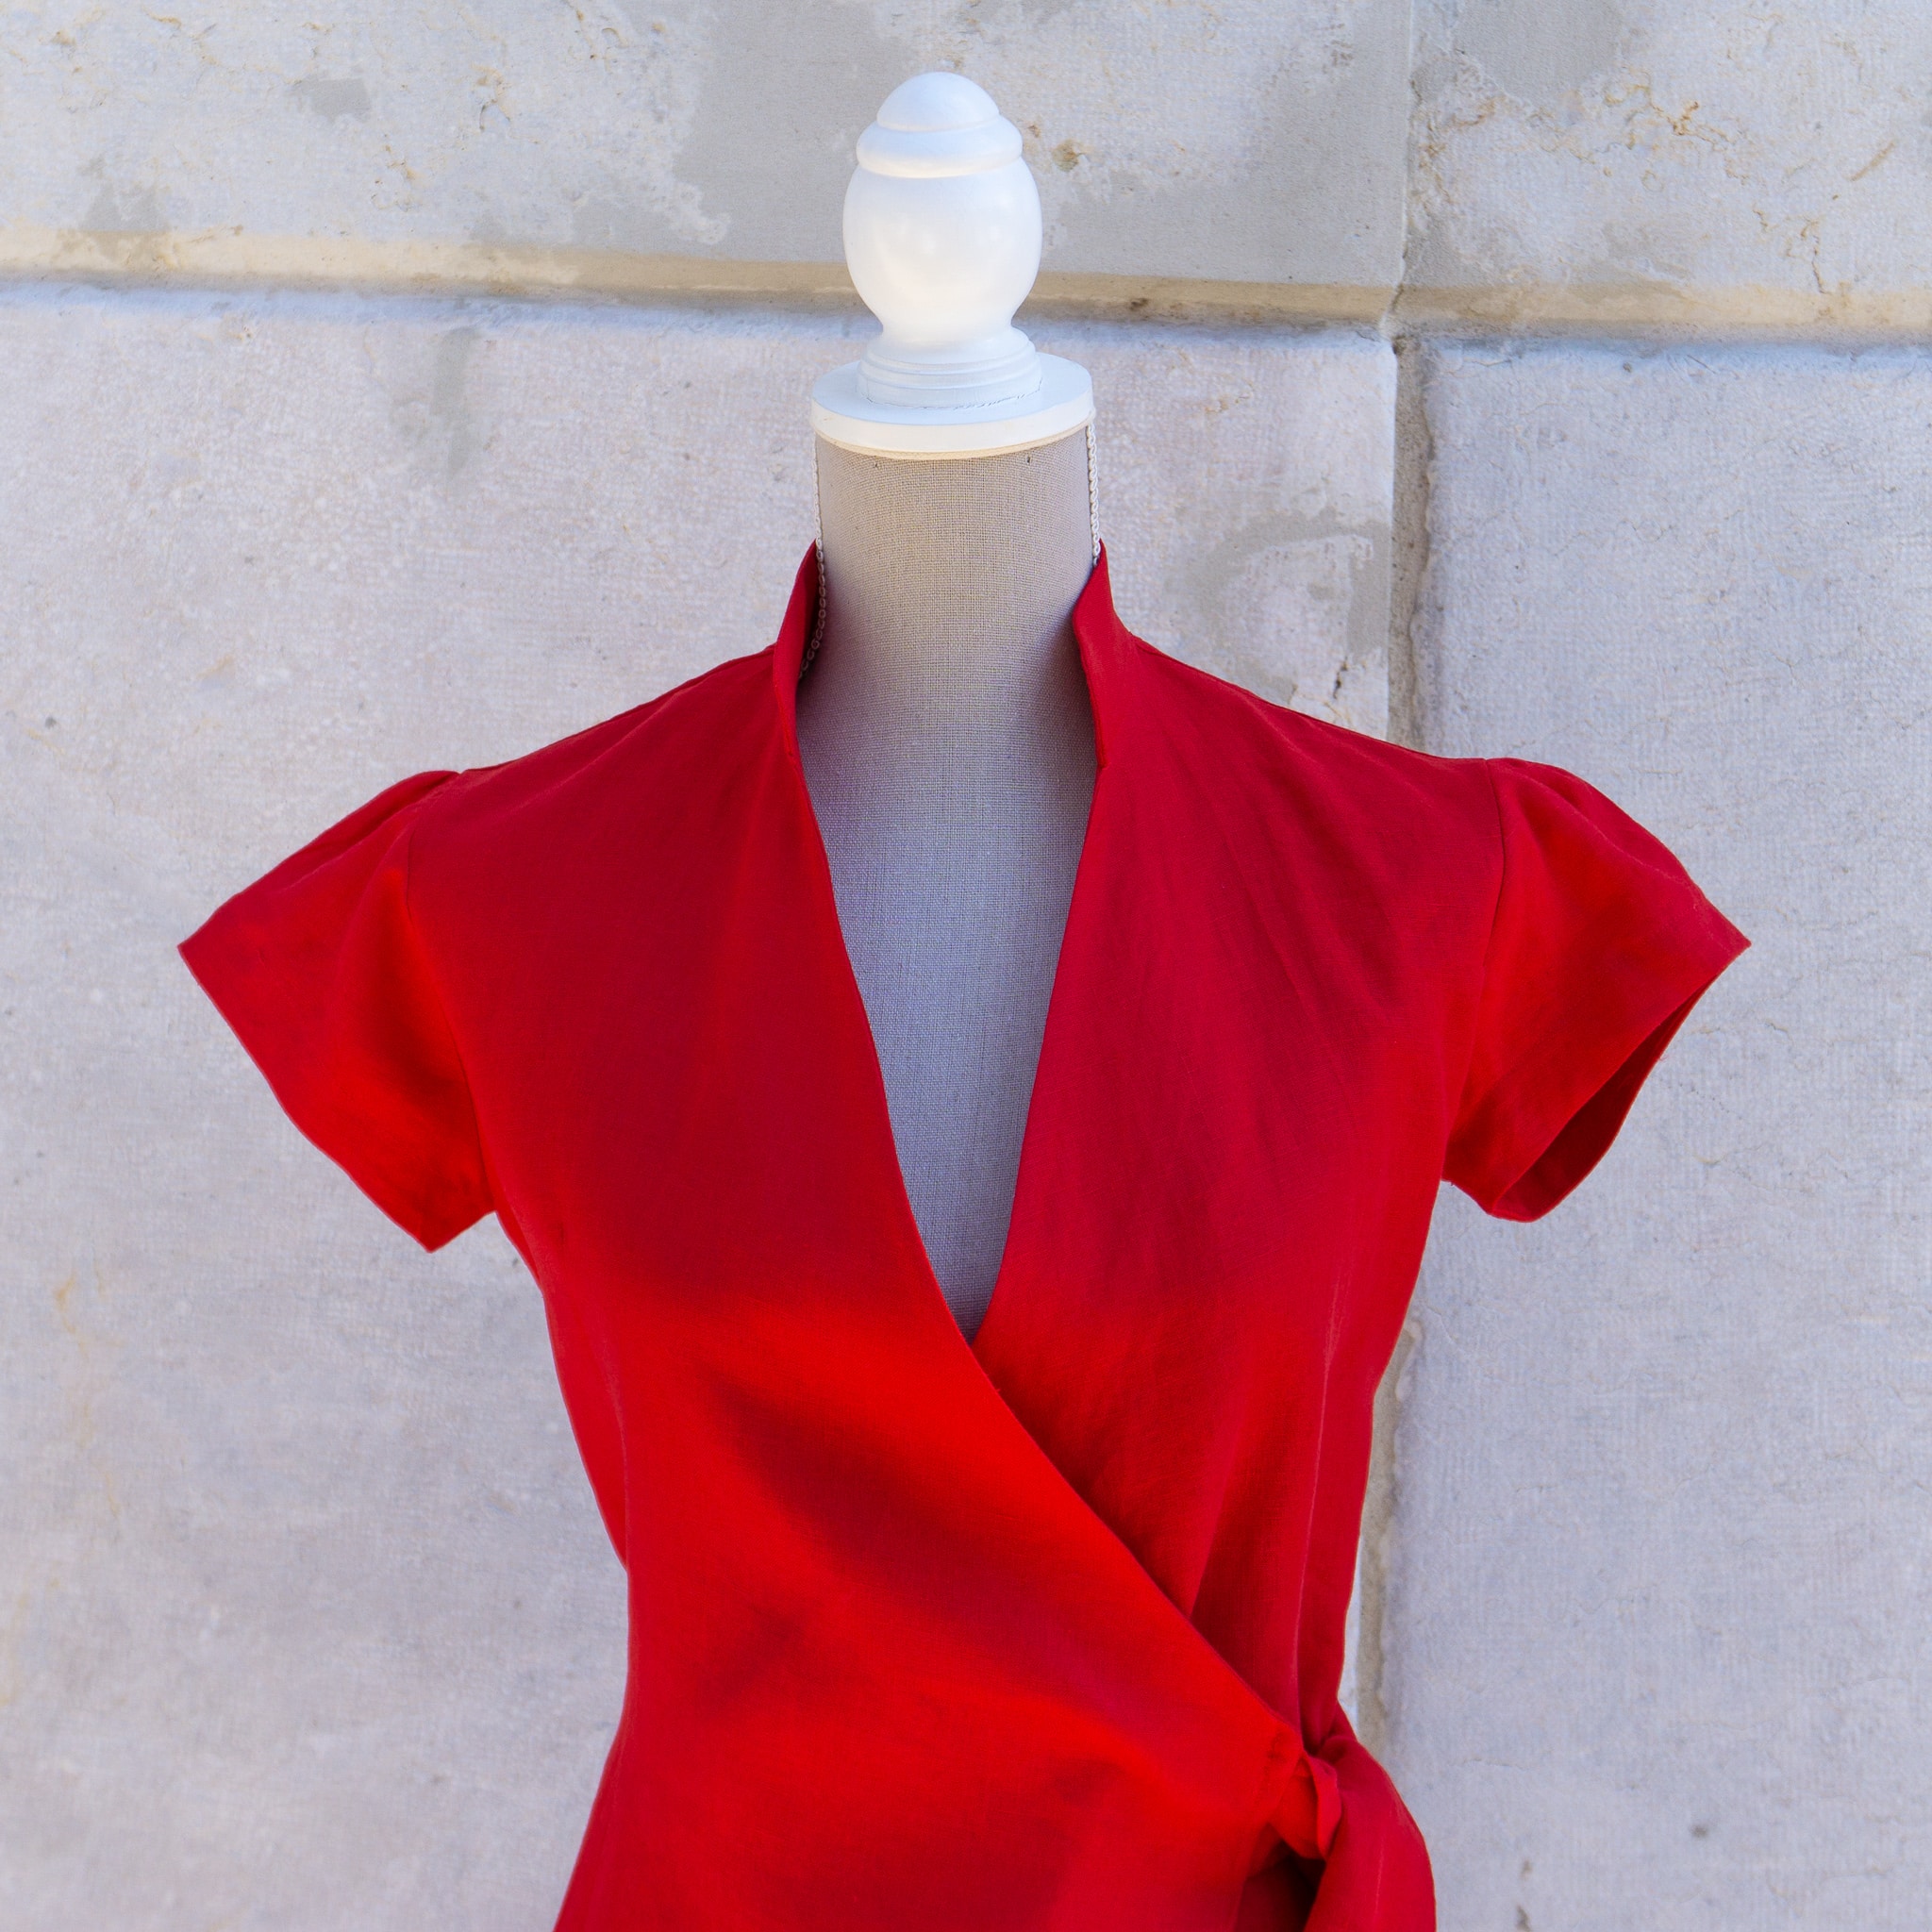 Red Linen Shirt dress - Robe chemise sur mesure en lin rouge - vue buste - création pour femme sur mesure